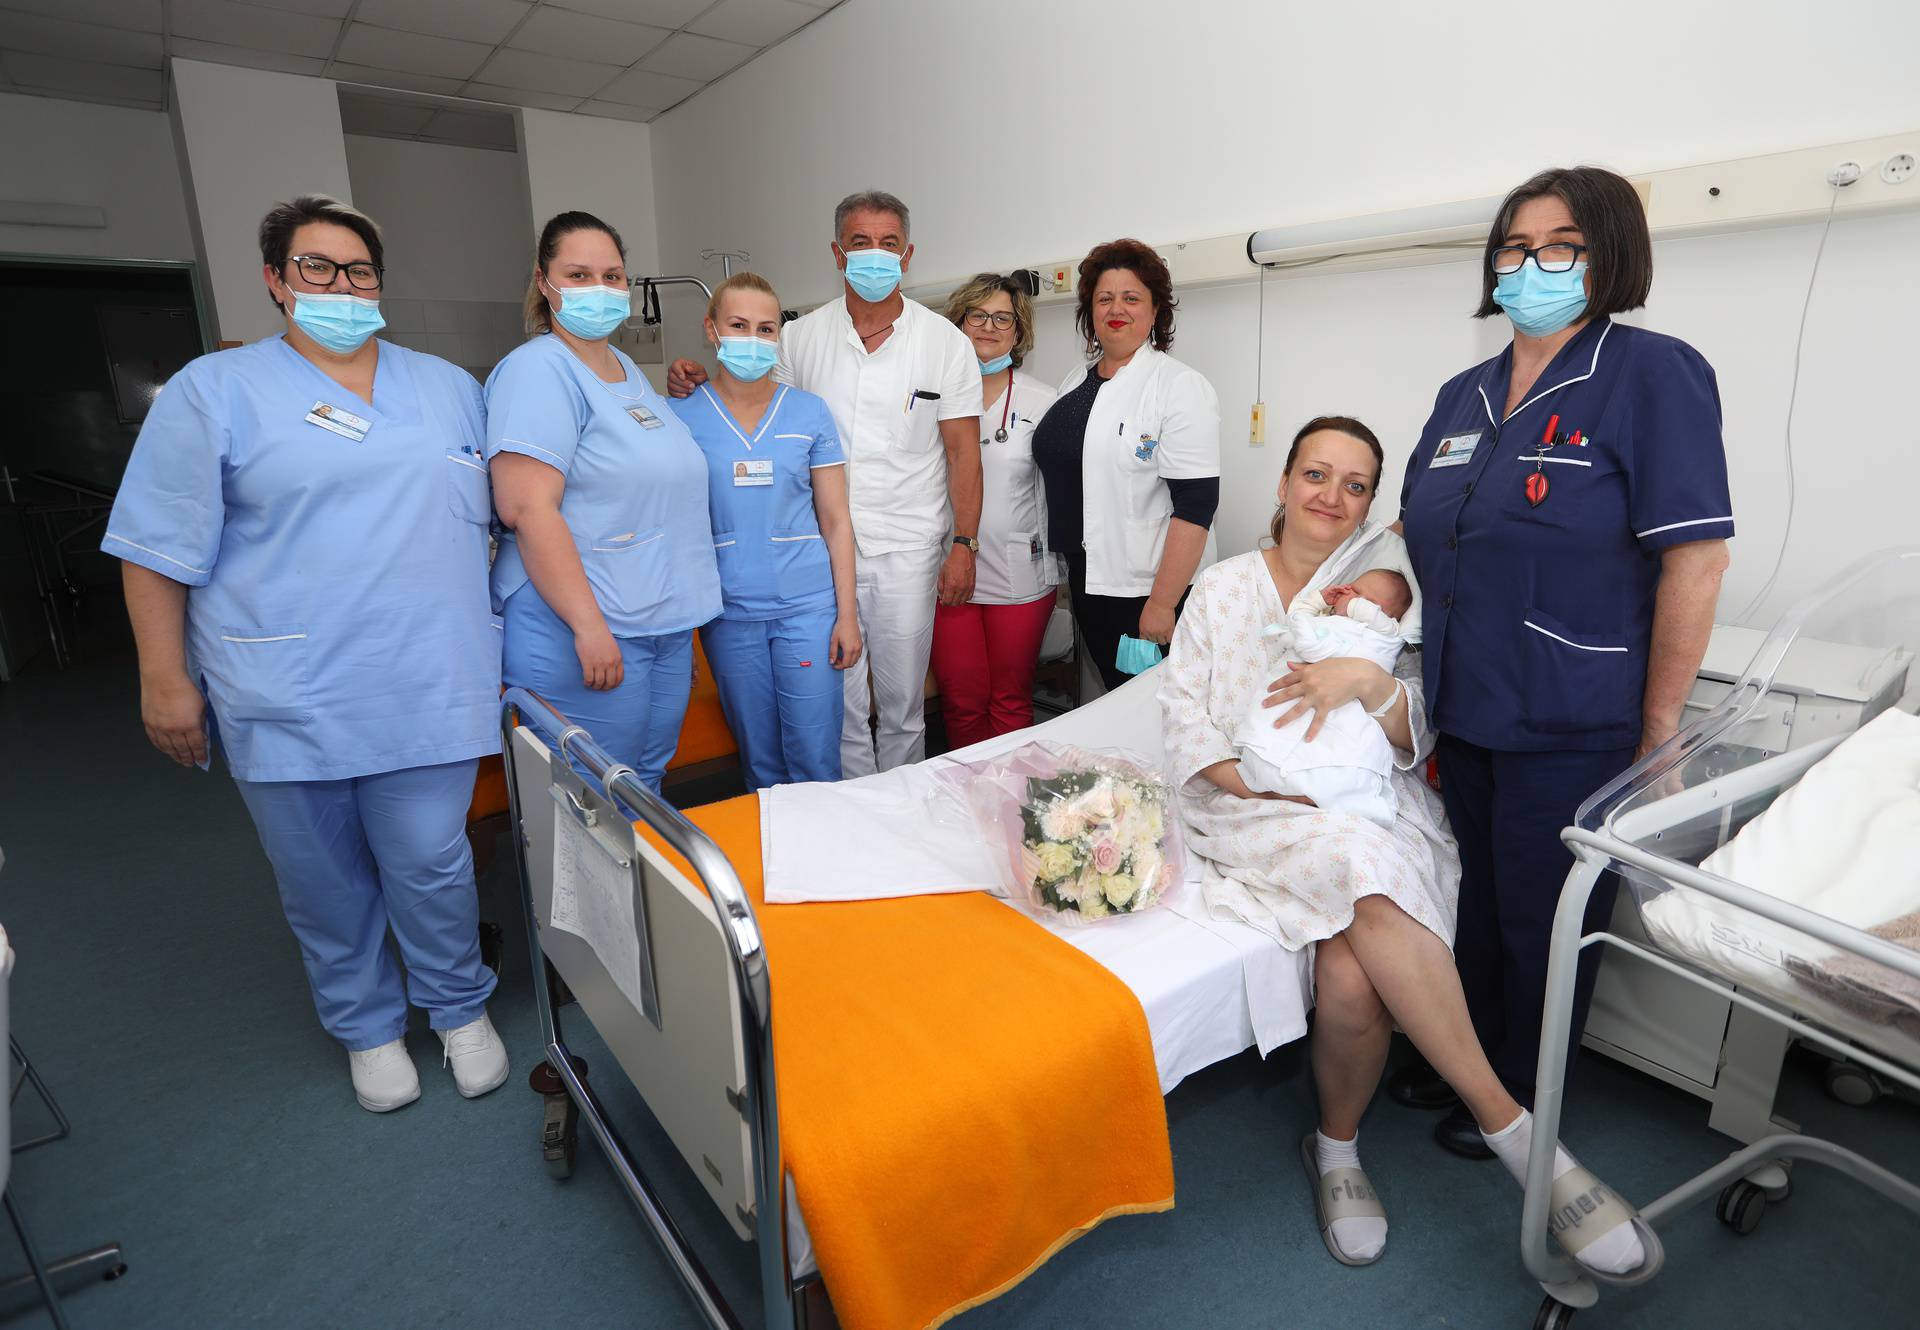 Ukrajinka Olha u Gospićkoj bolnici rodila je svoje drugo dijete, djevojčicu Daru